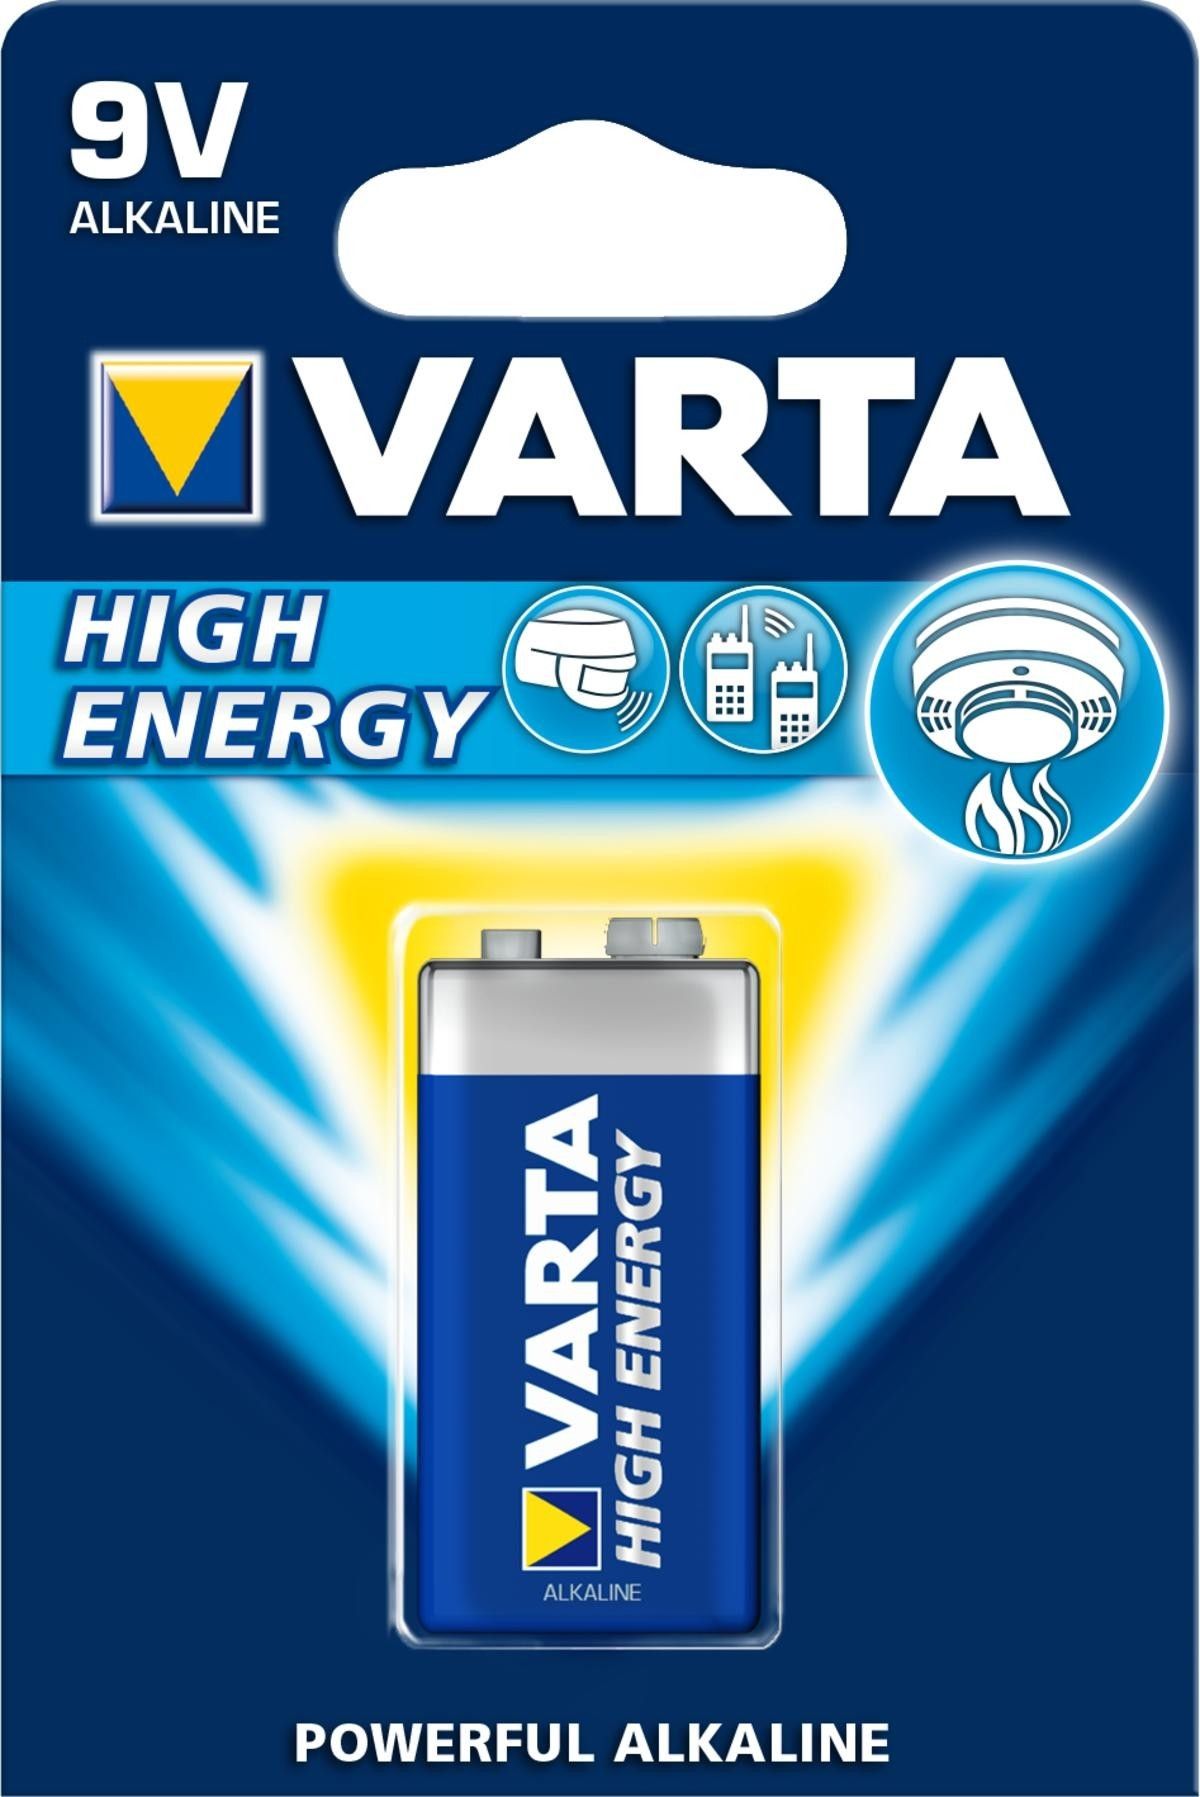 Varta Batteri 9V 6LR61 High Energy - Batterier - Bilia